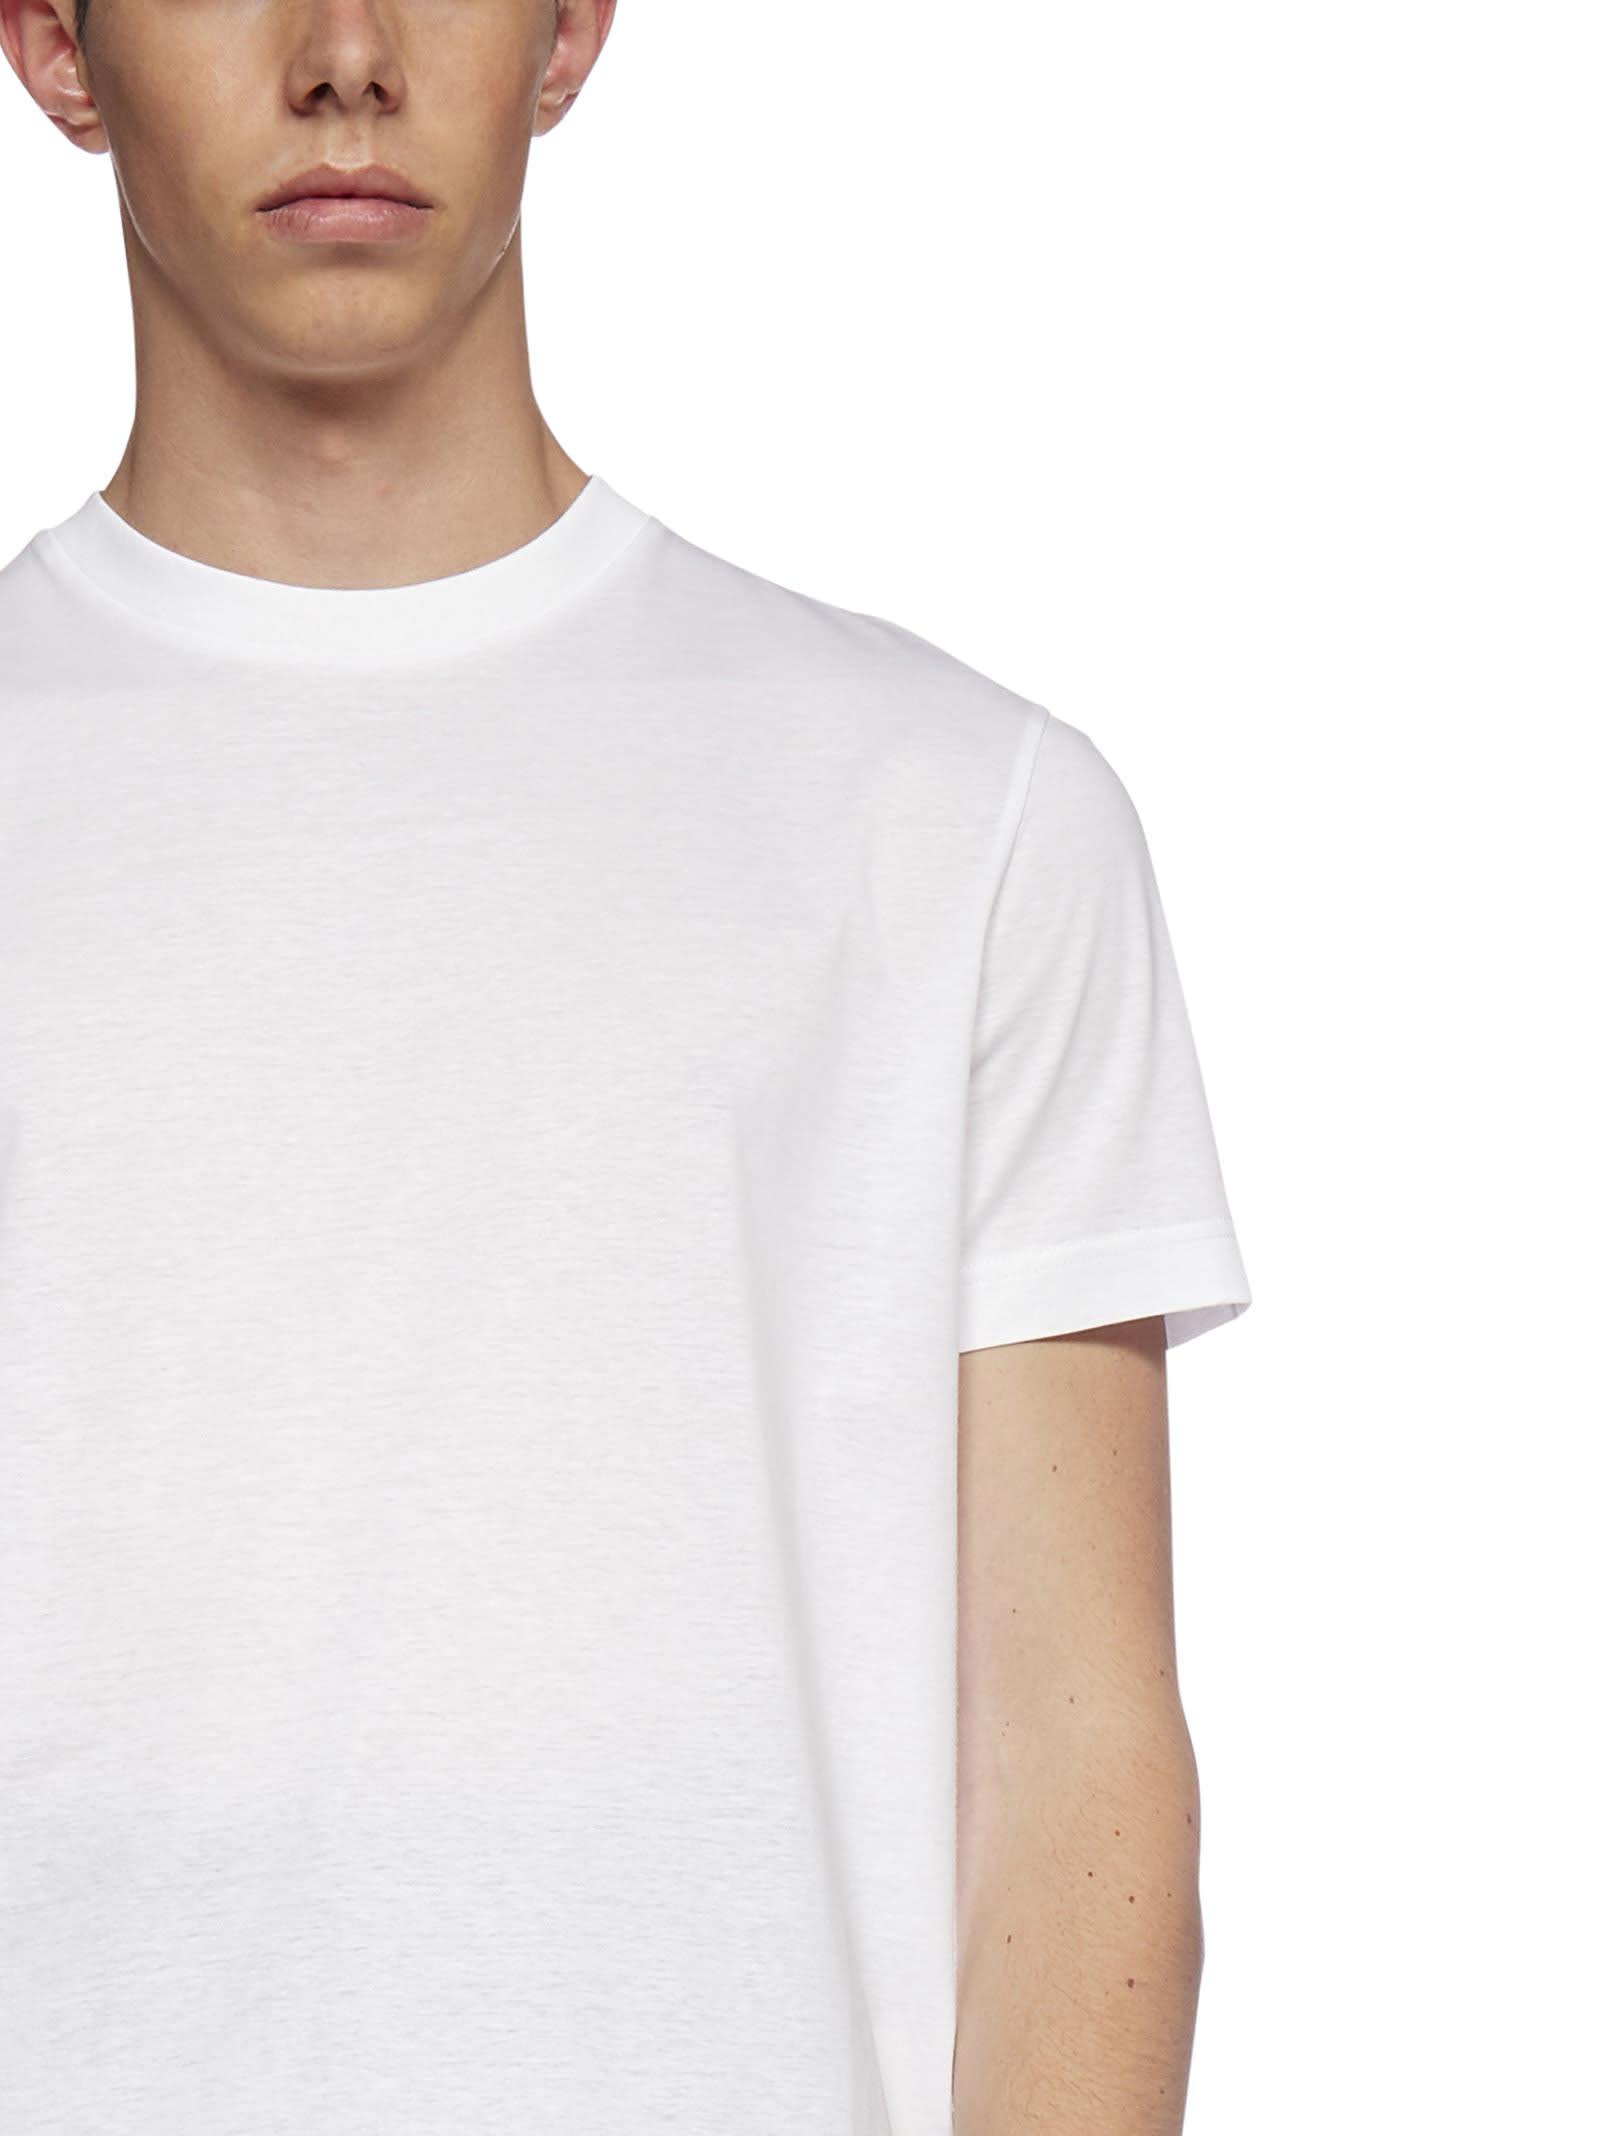 Prada T-shirt in White for Men | Lyst